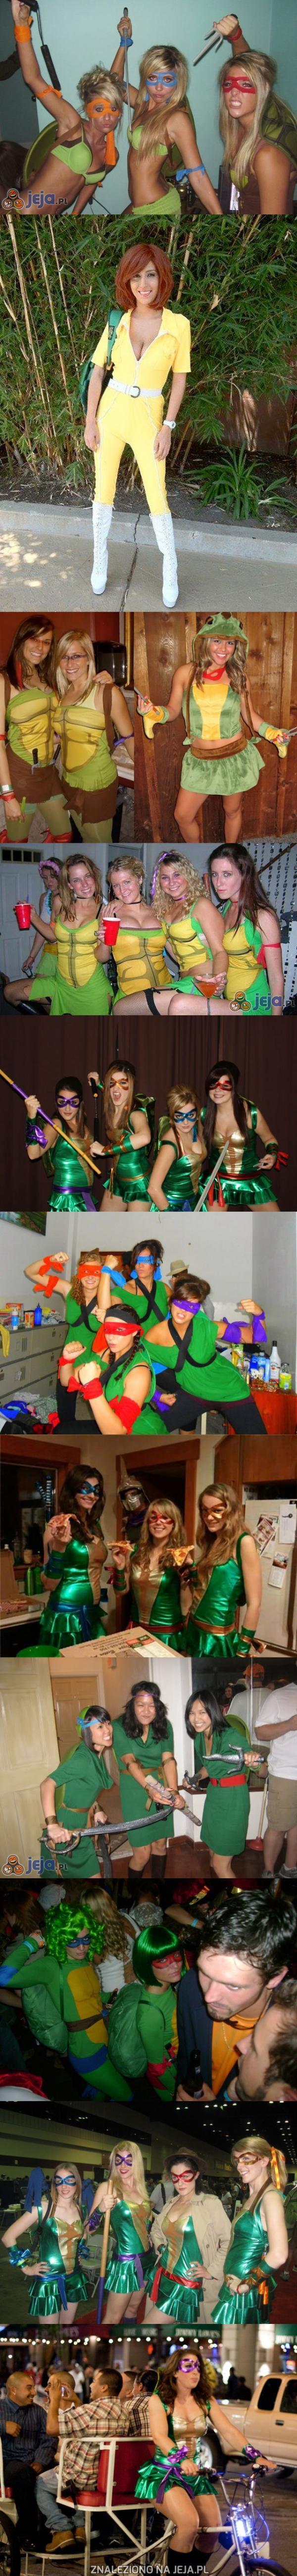 Dziewczyny w przebraniach z Żółwi Ninja